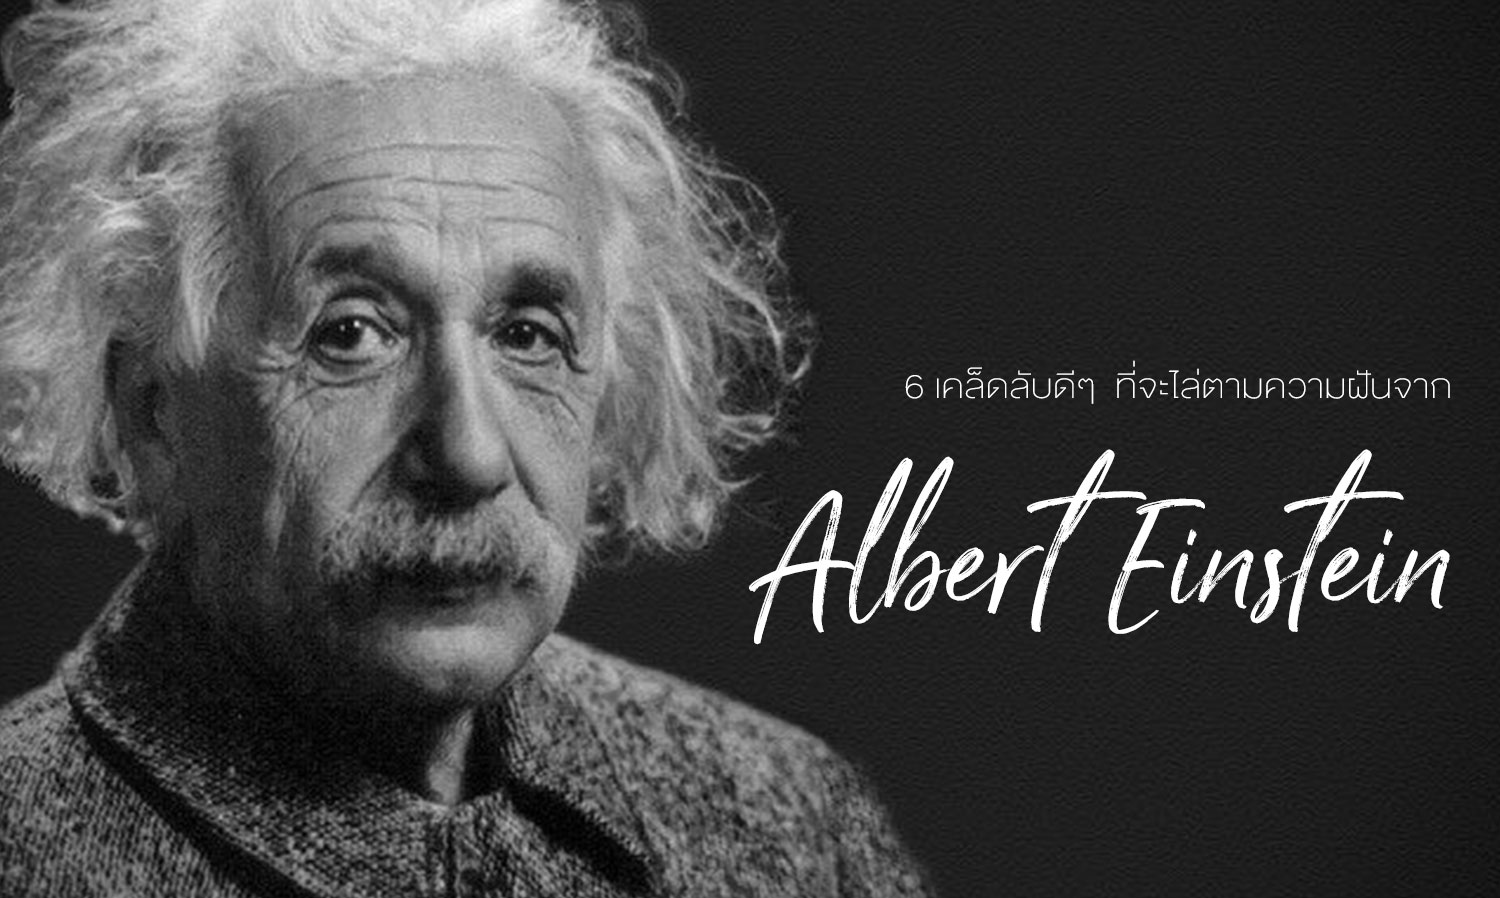 6 เคล็ดลับดี ๆ ที่จะไล่ตามความฝันจากอัลเบิร์ต ไอน์สไตน์